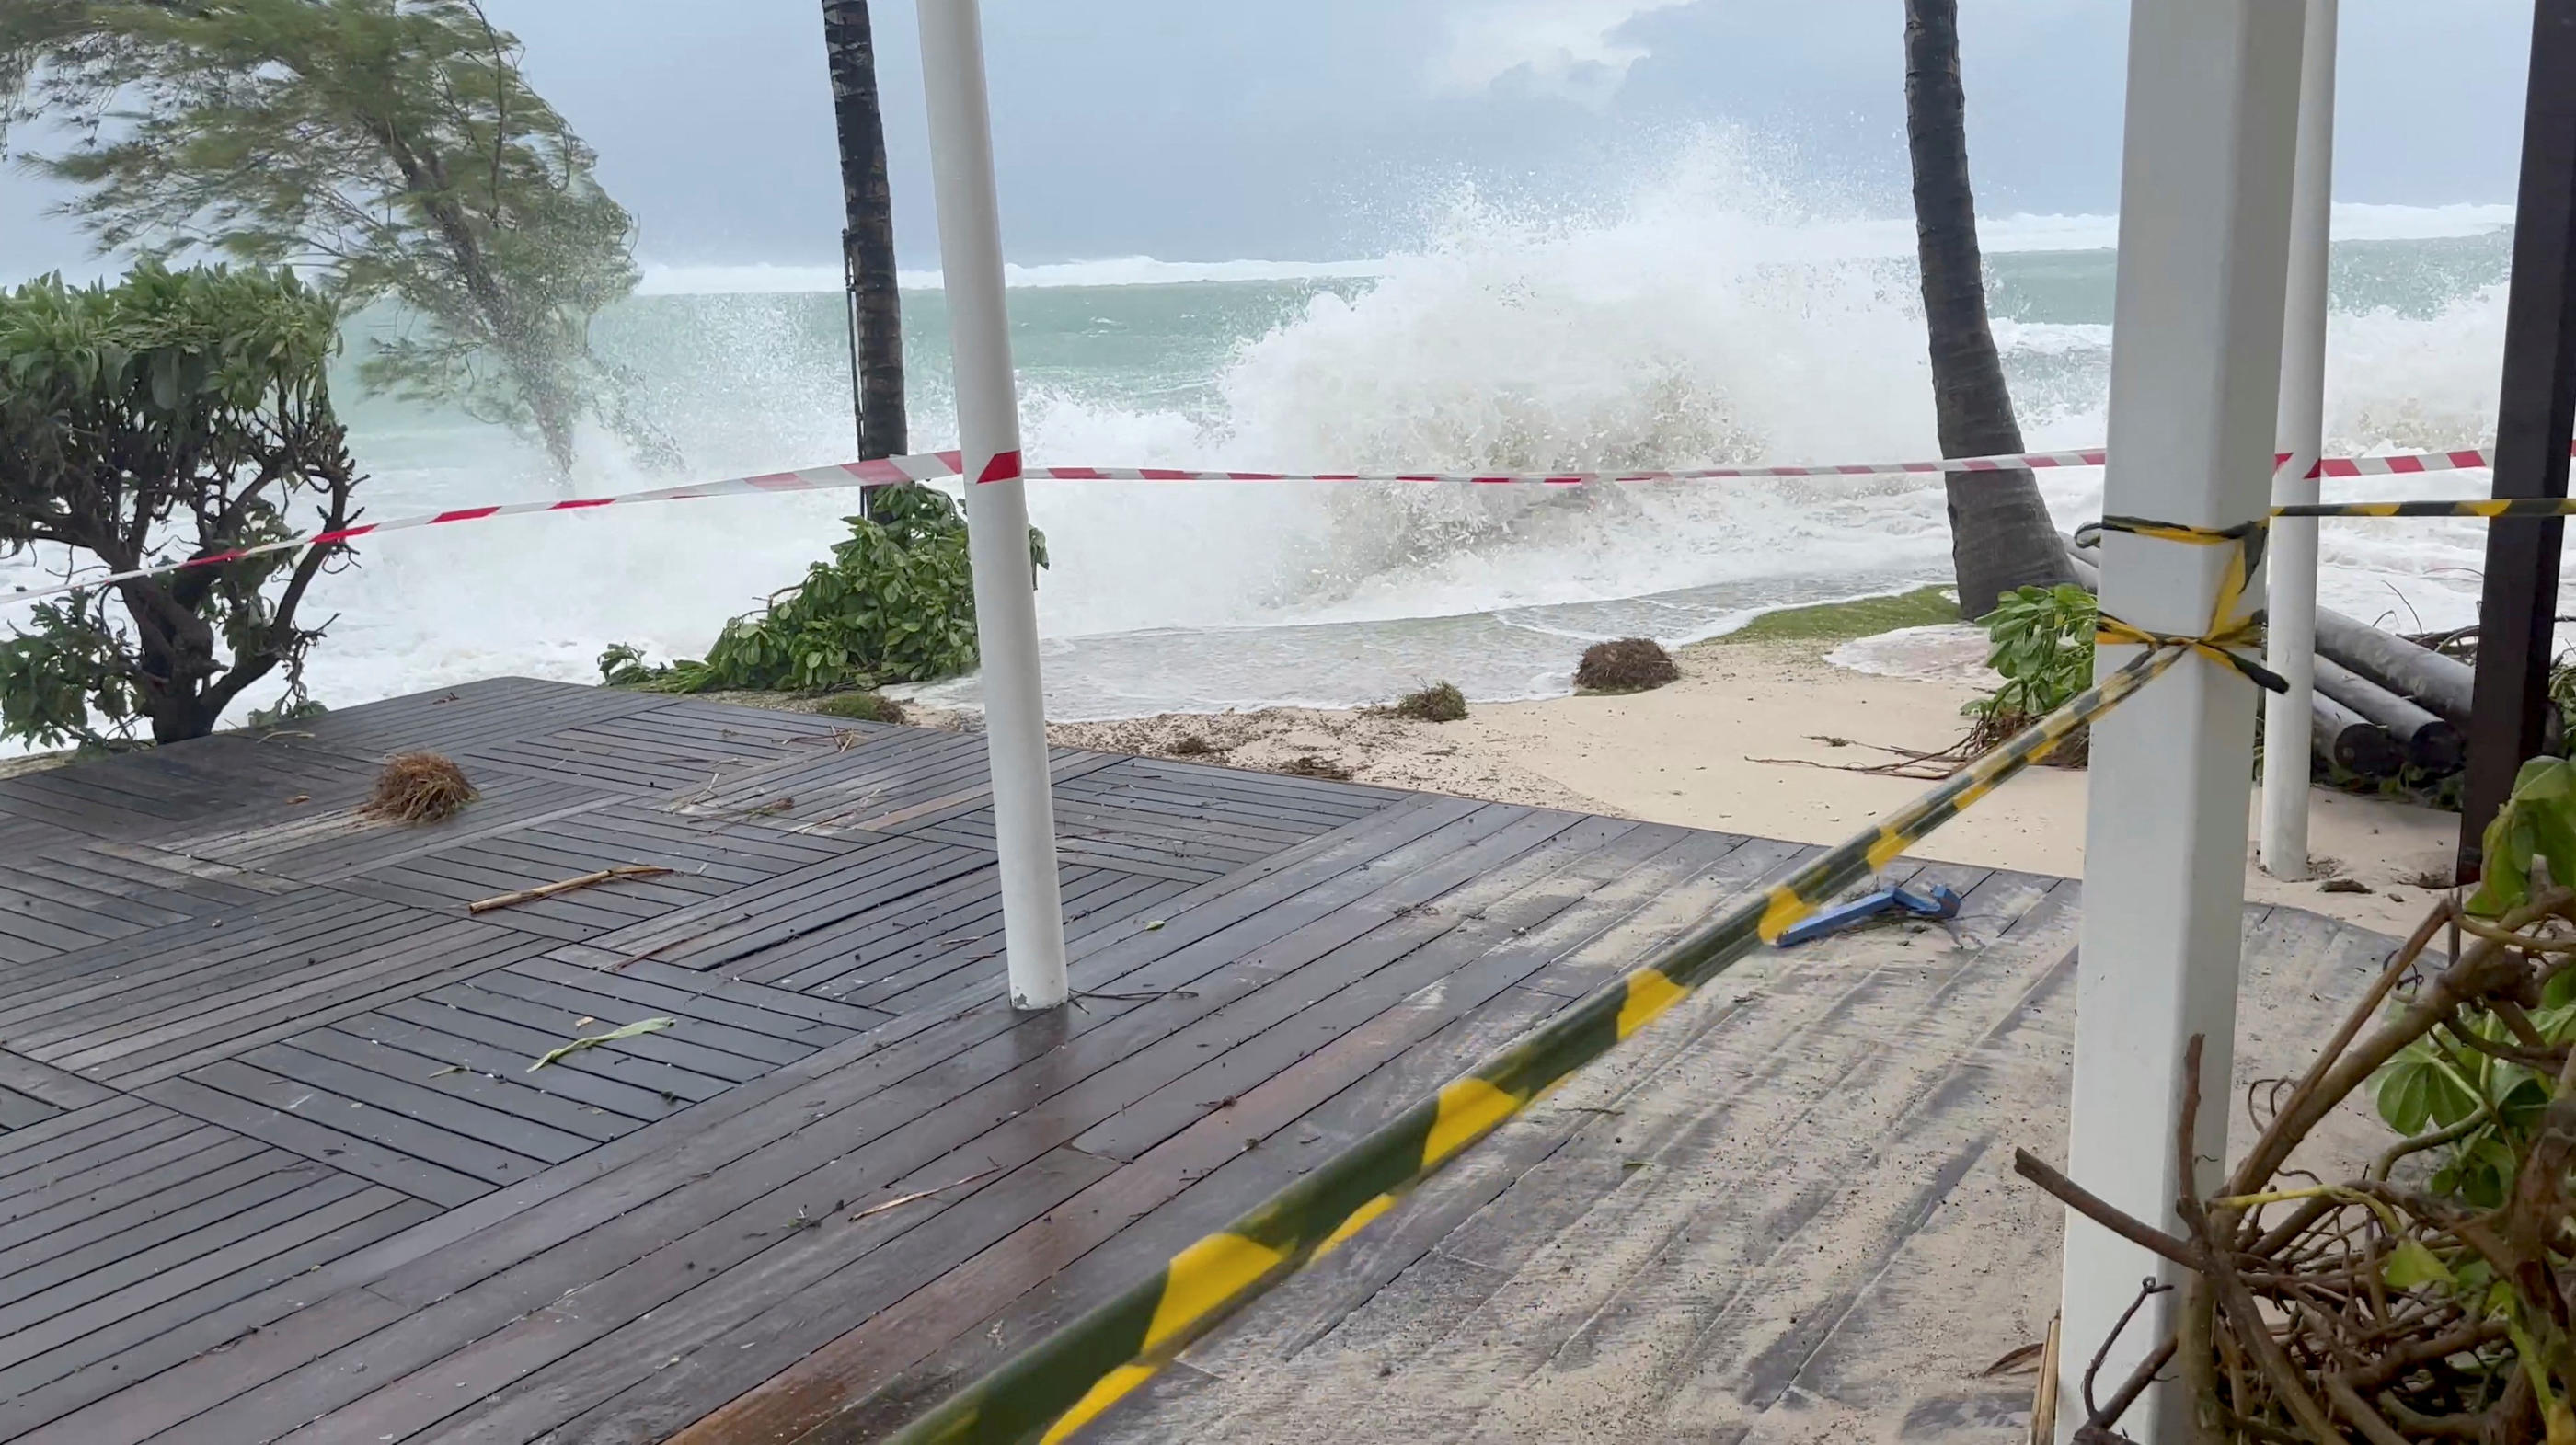 Le cyclone Freddy a frappé l'île Maurice lundi. Reuters/Laura Edwards